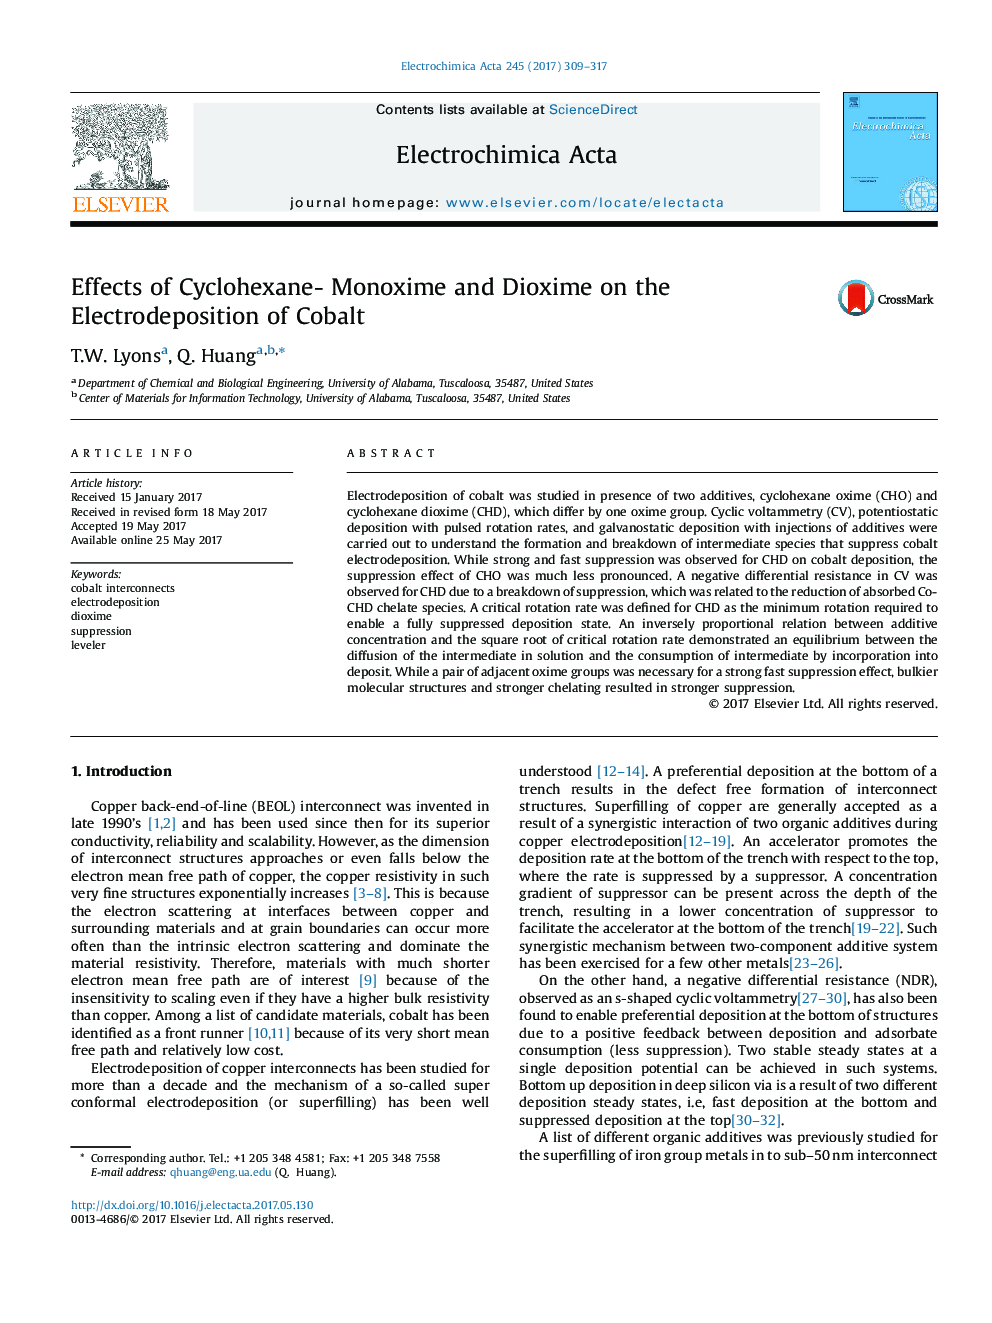 اثرات سیکلوکسان - منوکسیم و دی اکسیوم بر الکترودهایی کبالت